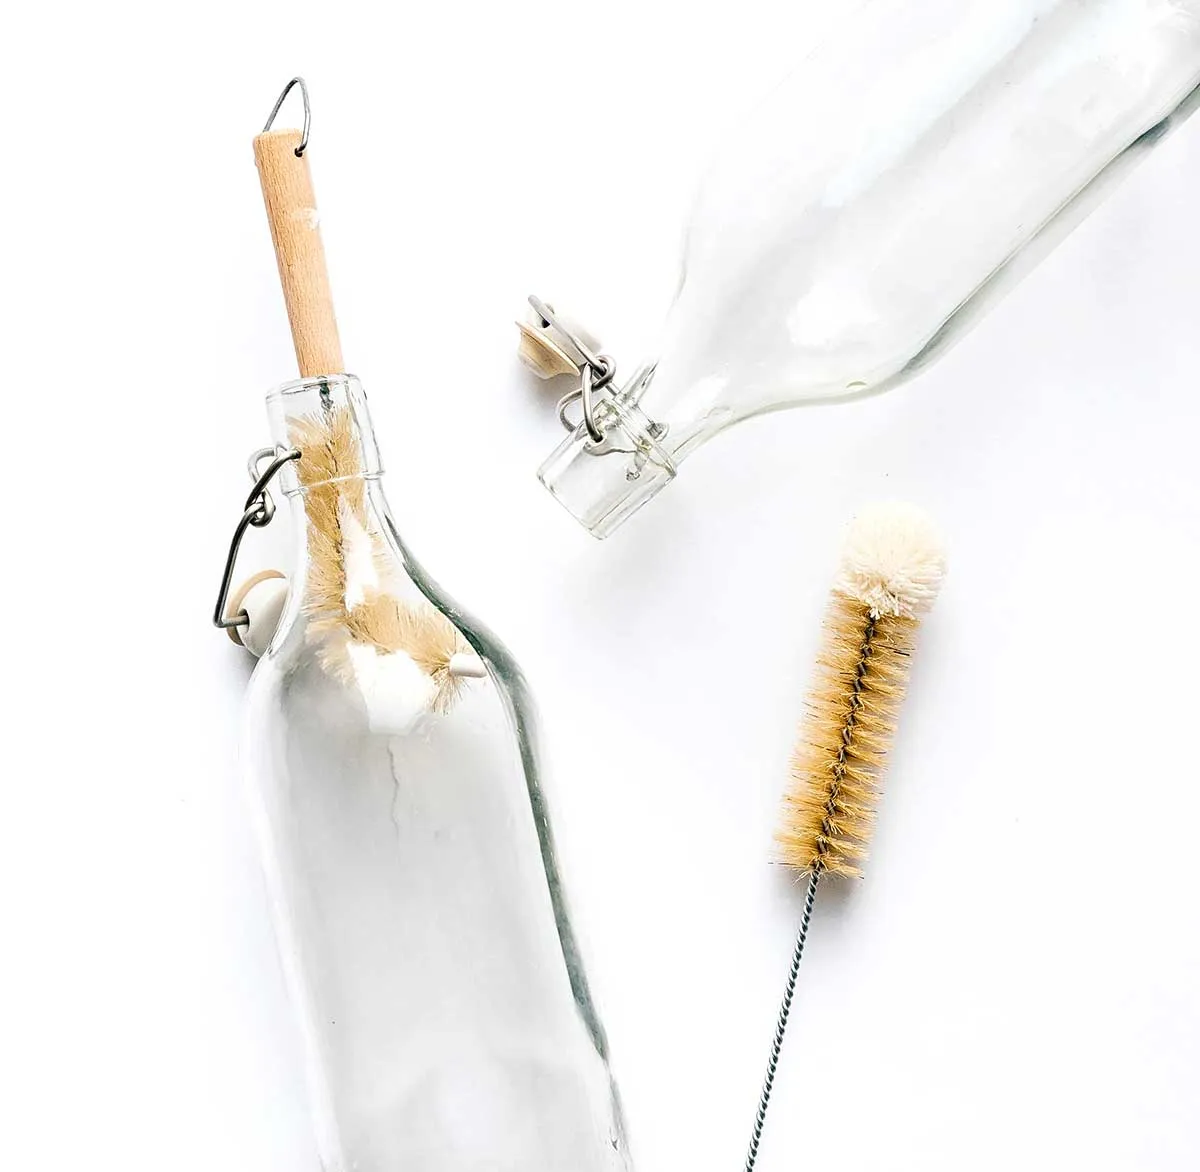 trinkflasche richtig reinigen glasflasche bürste verwenden